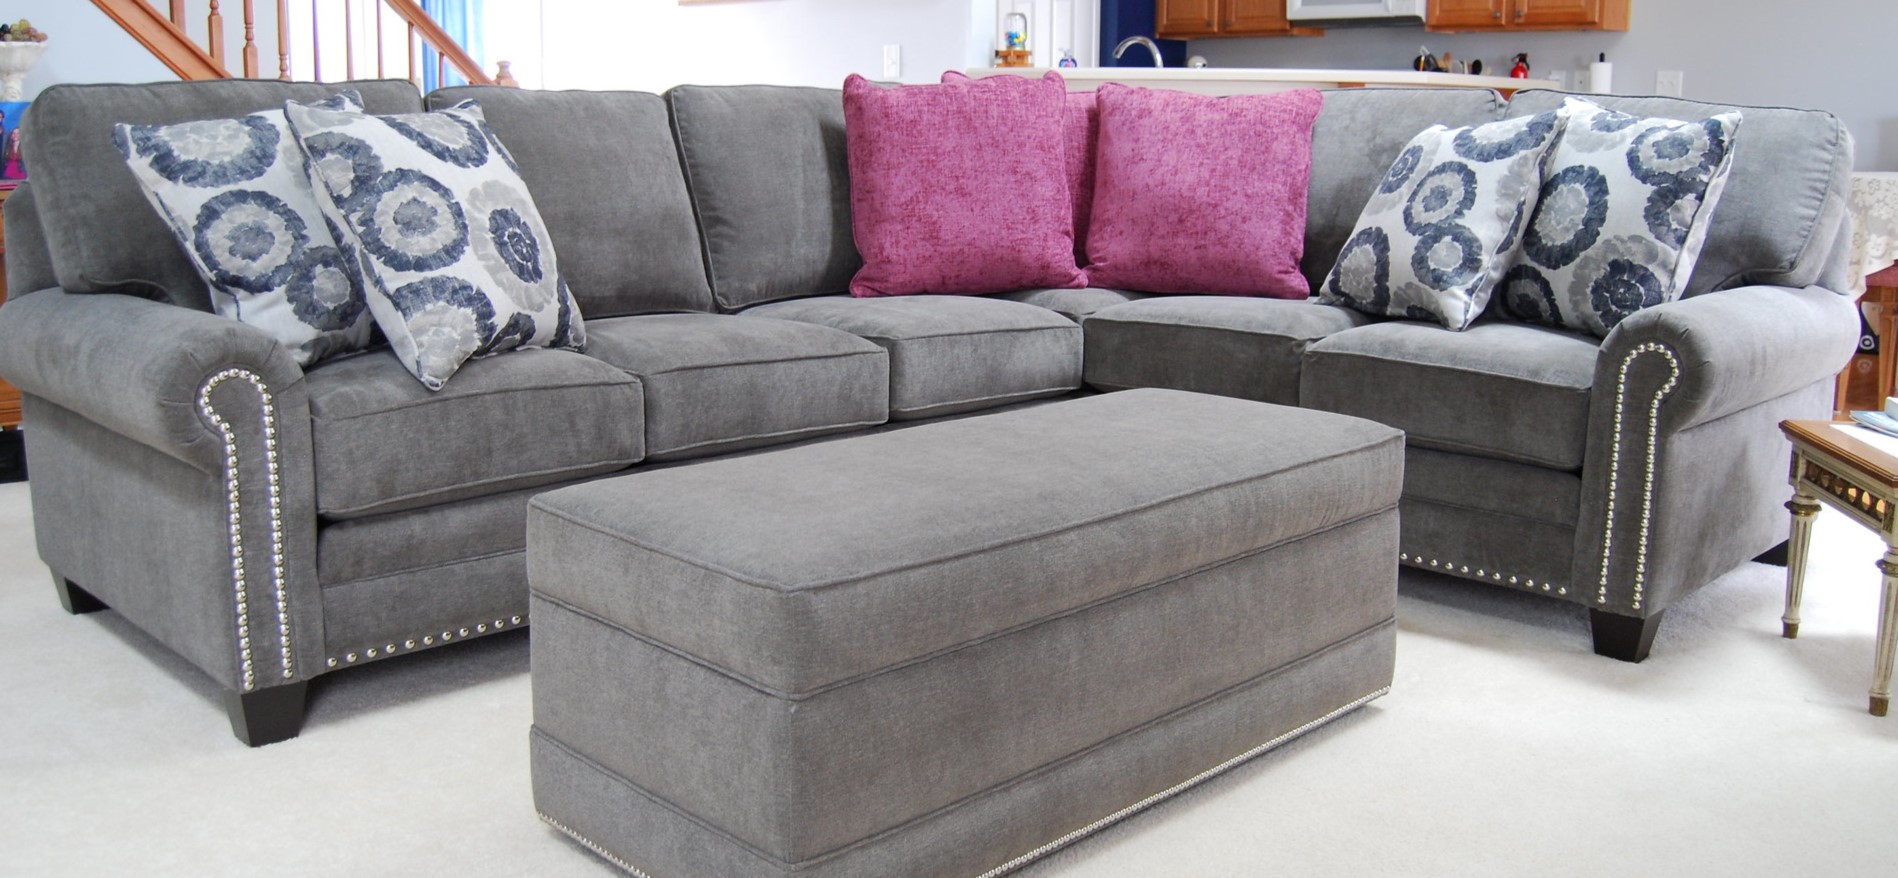 Серый диван с деревянными ножками идеально подойдет для интерьера современной гостиной